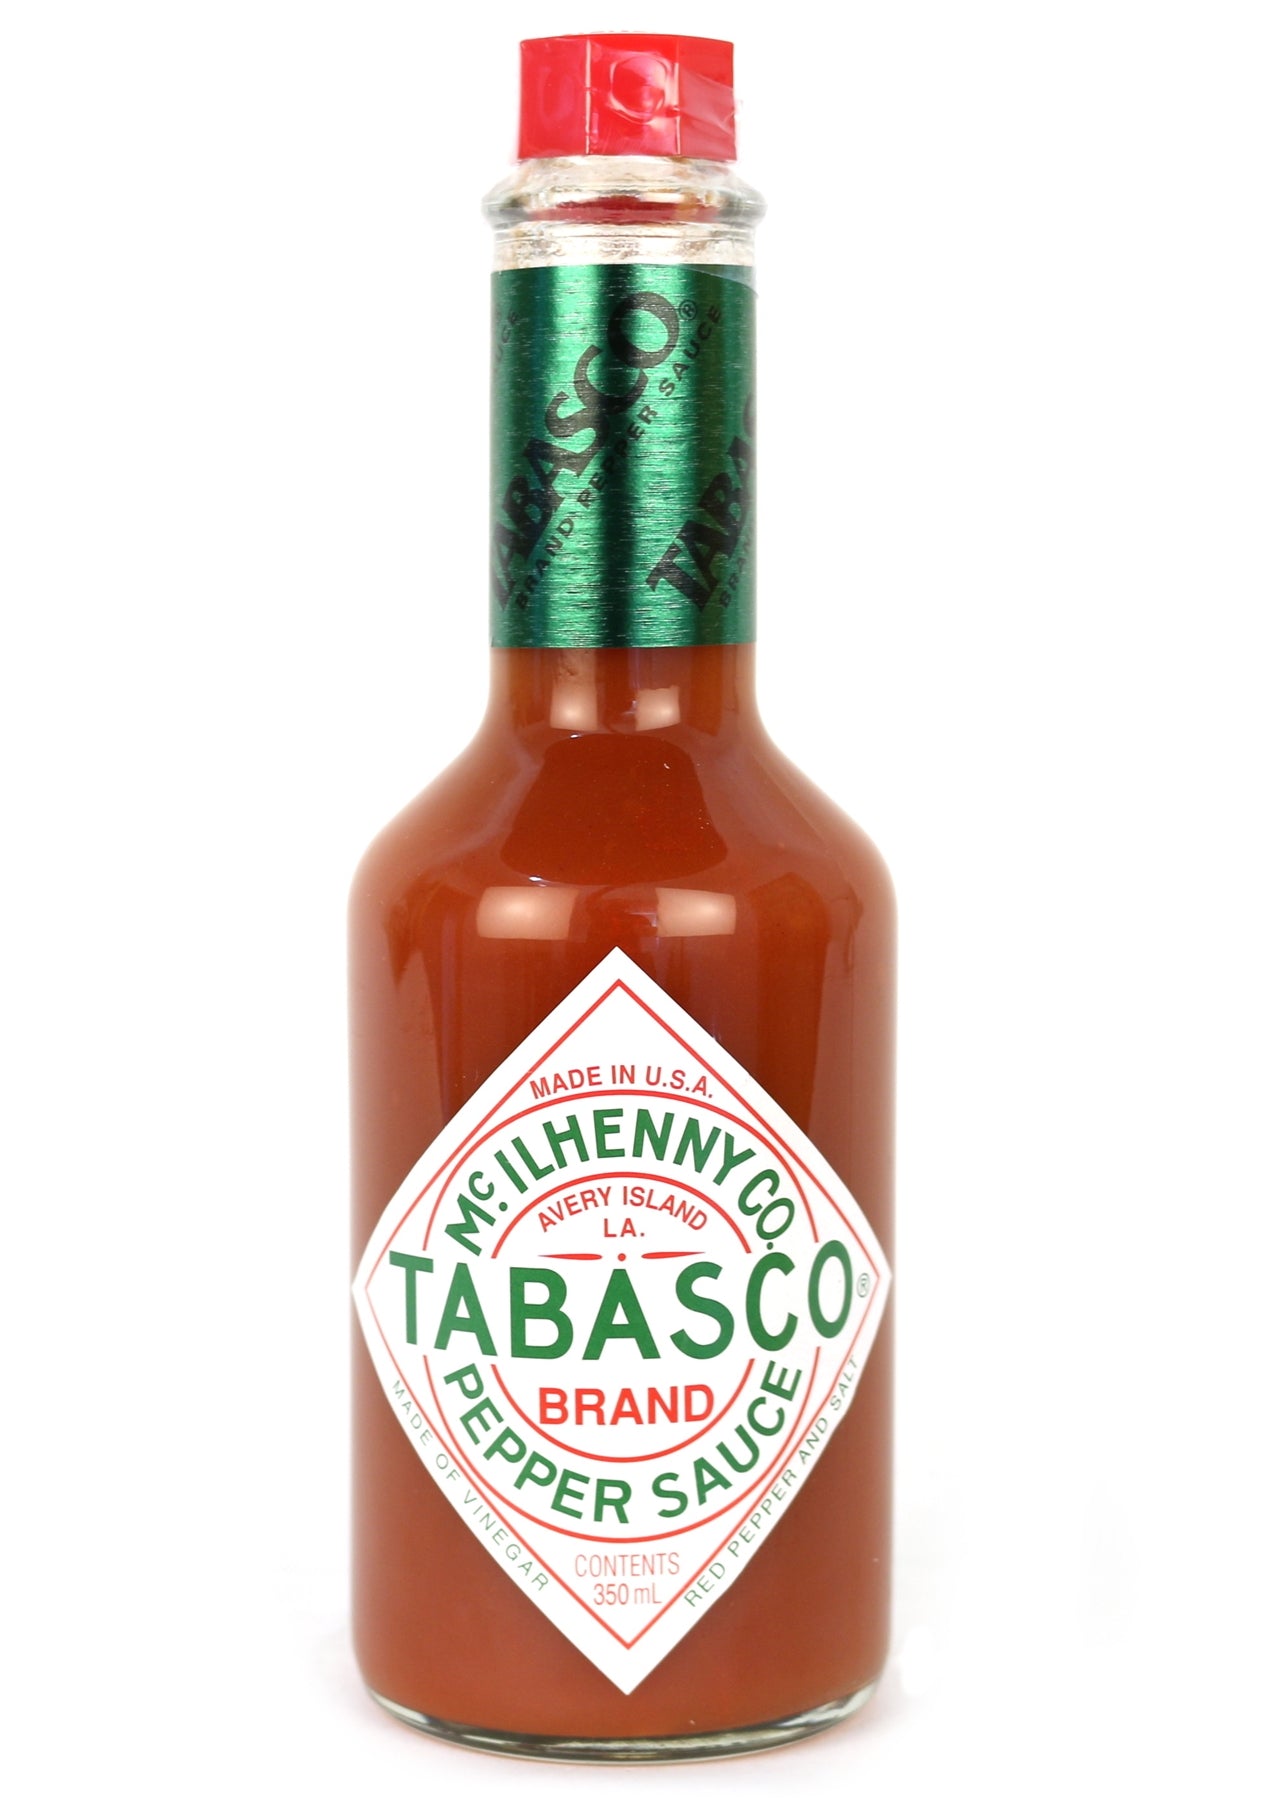 Tabasco pepper sauce